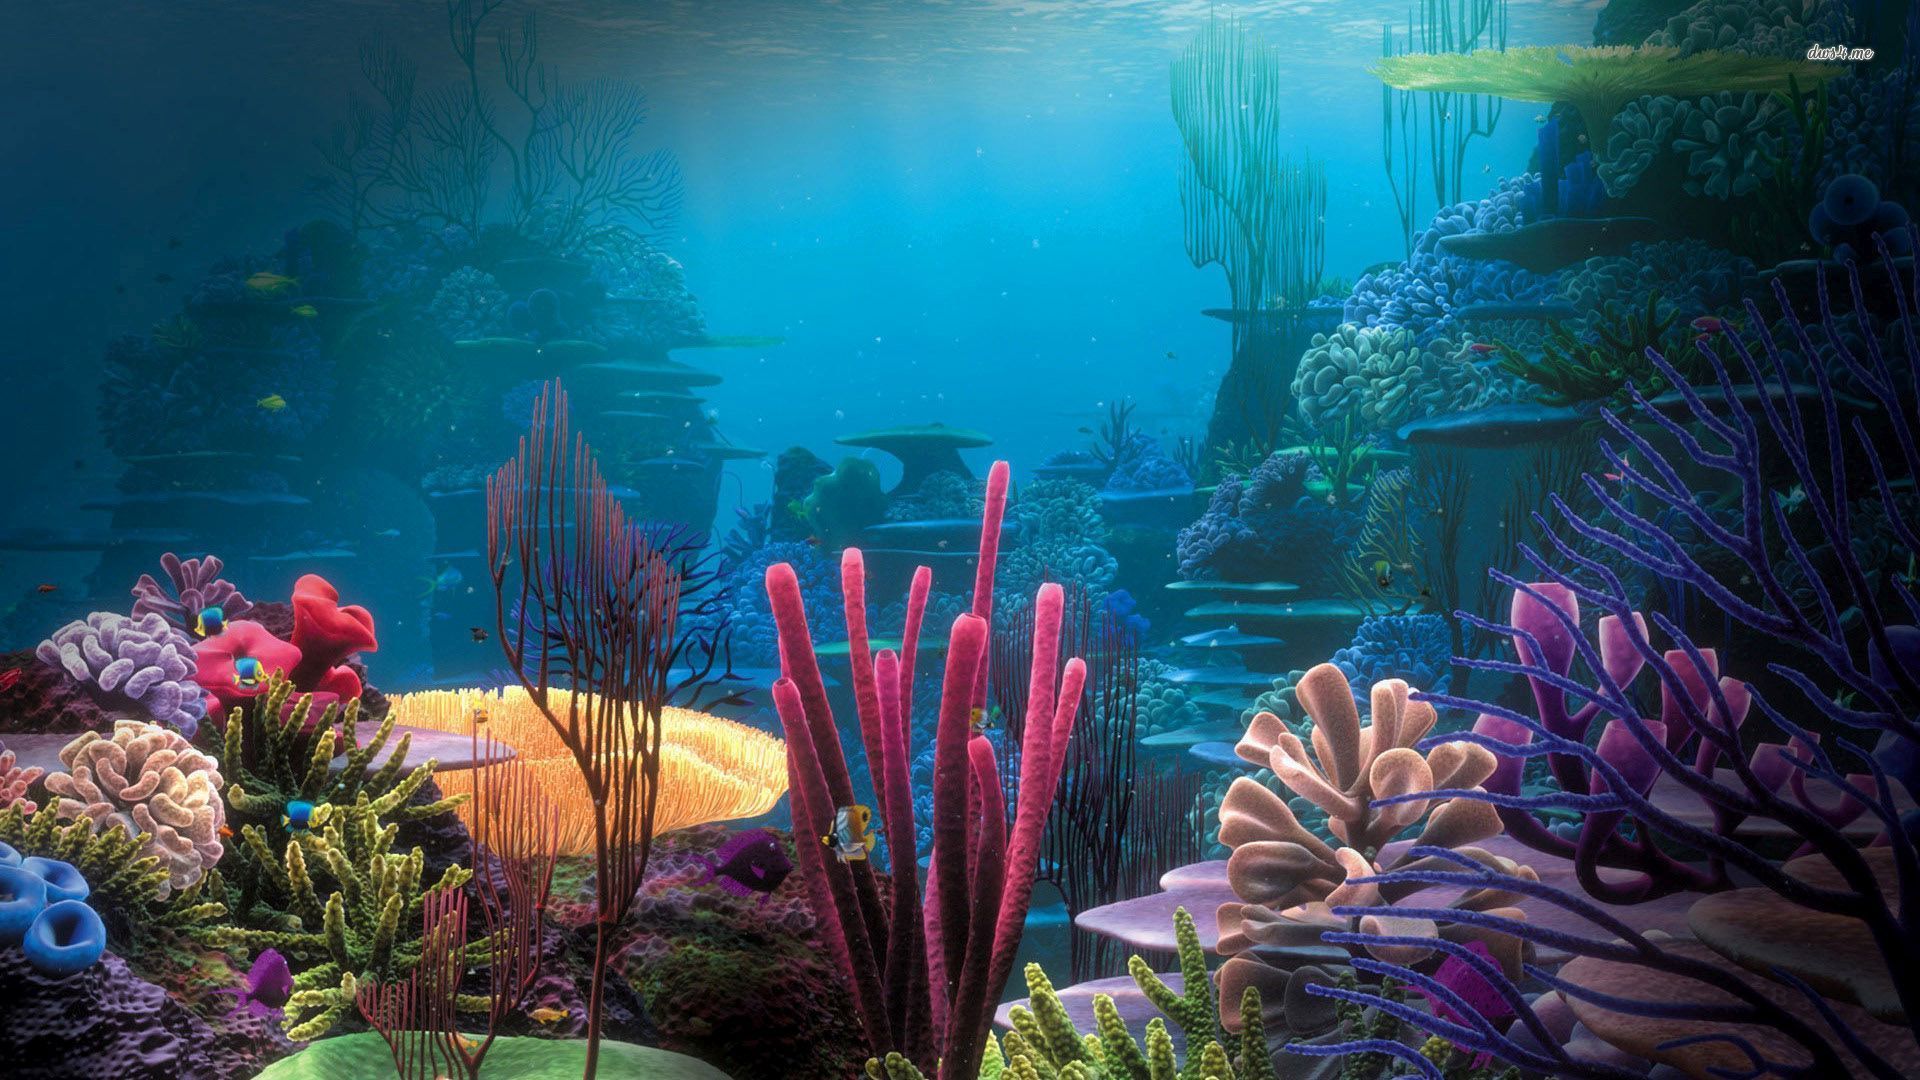 Aquarium wallpaper - Photography wallpapers